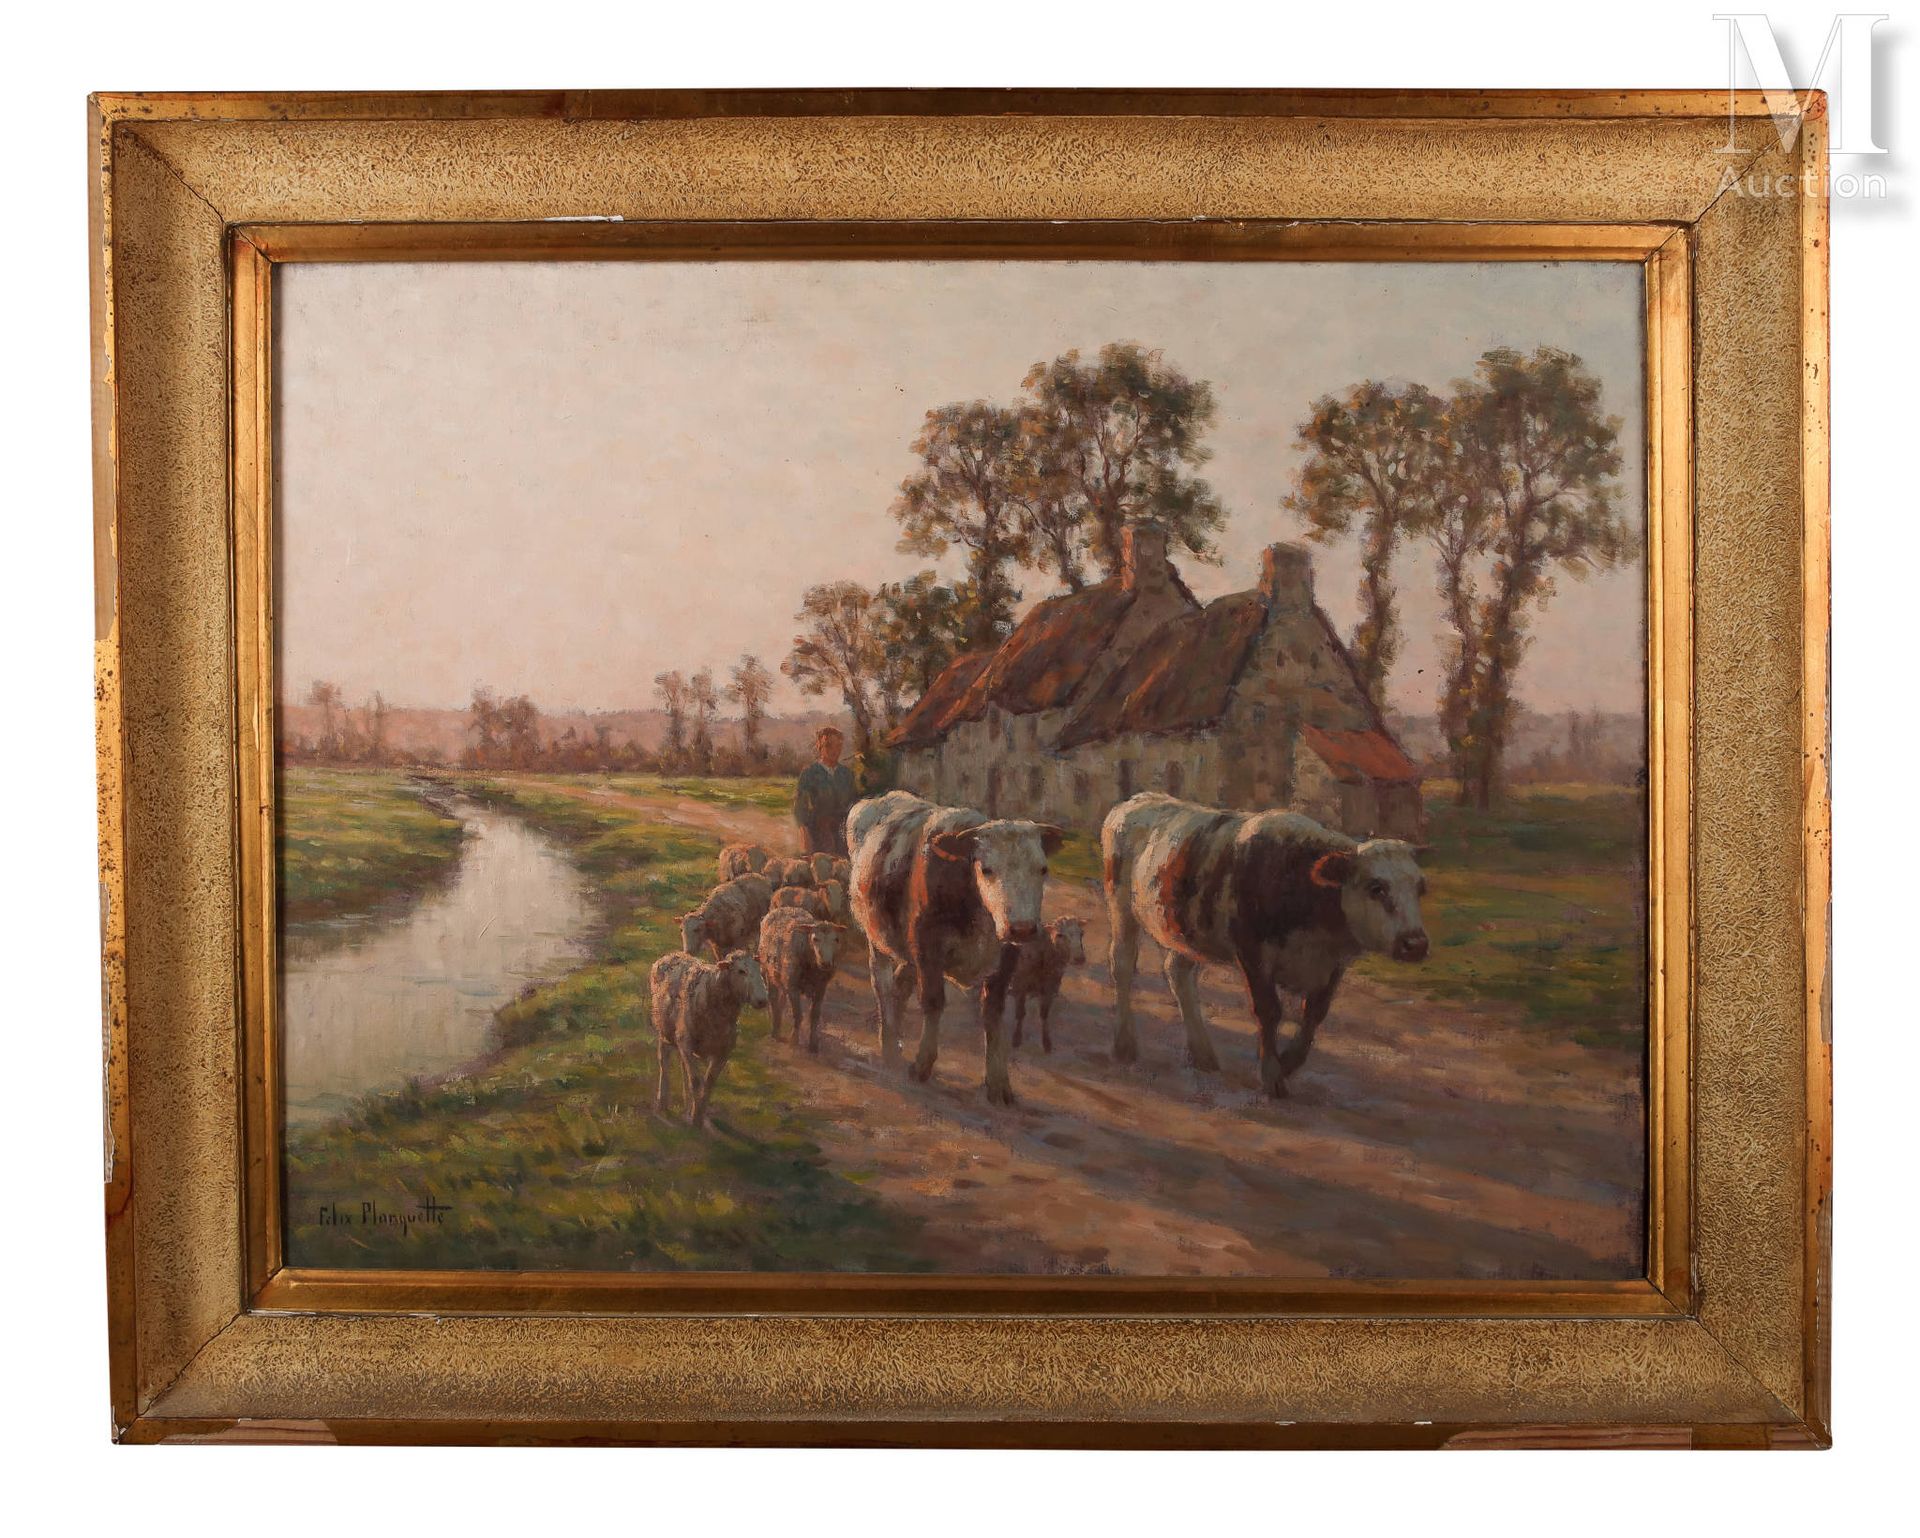 Félix PLANQUETTE (1873-1964) 牛群归来
布面油画
54 x 73 厘米
右下方有签名